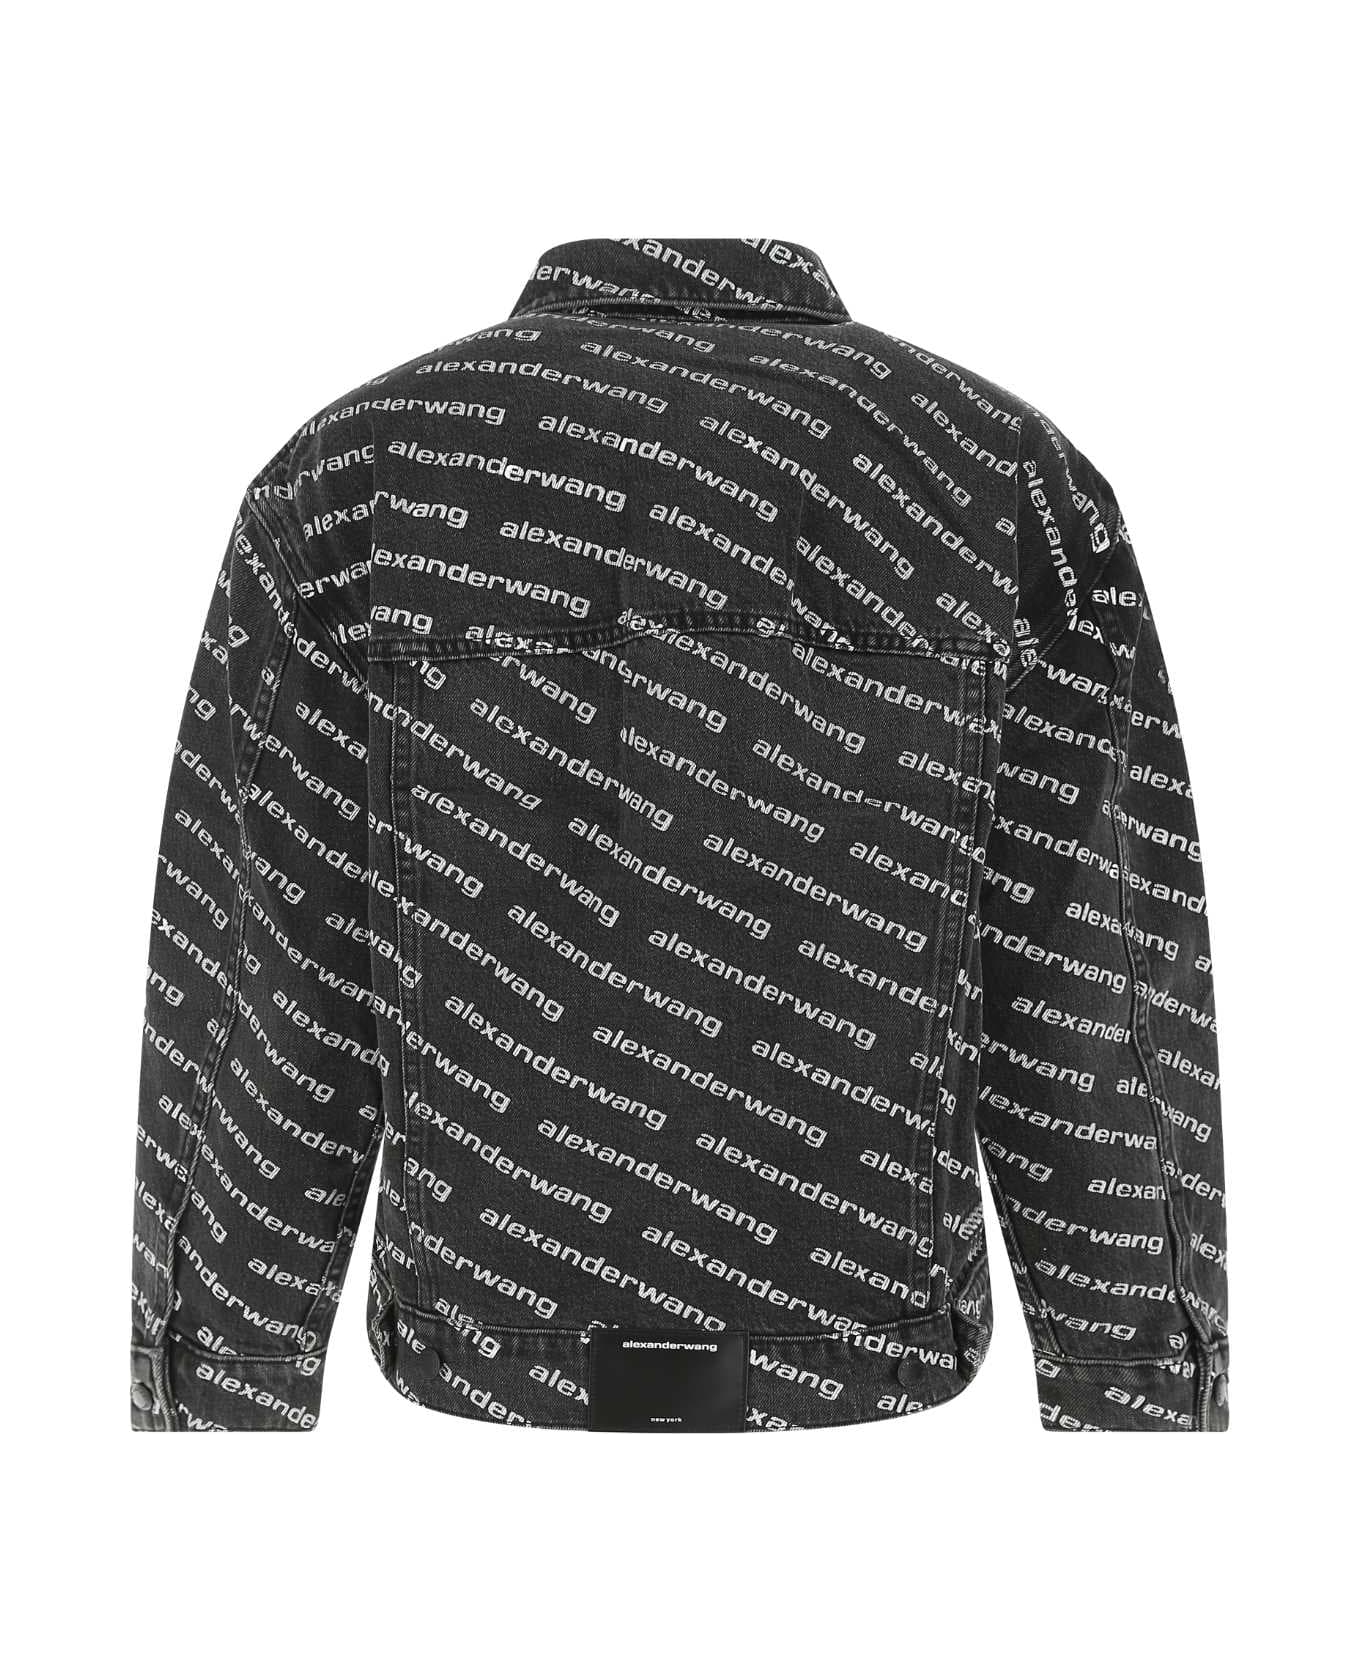 Alexander Wang Printed Denim Jacket - GREYAGEDWHITE